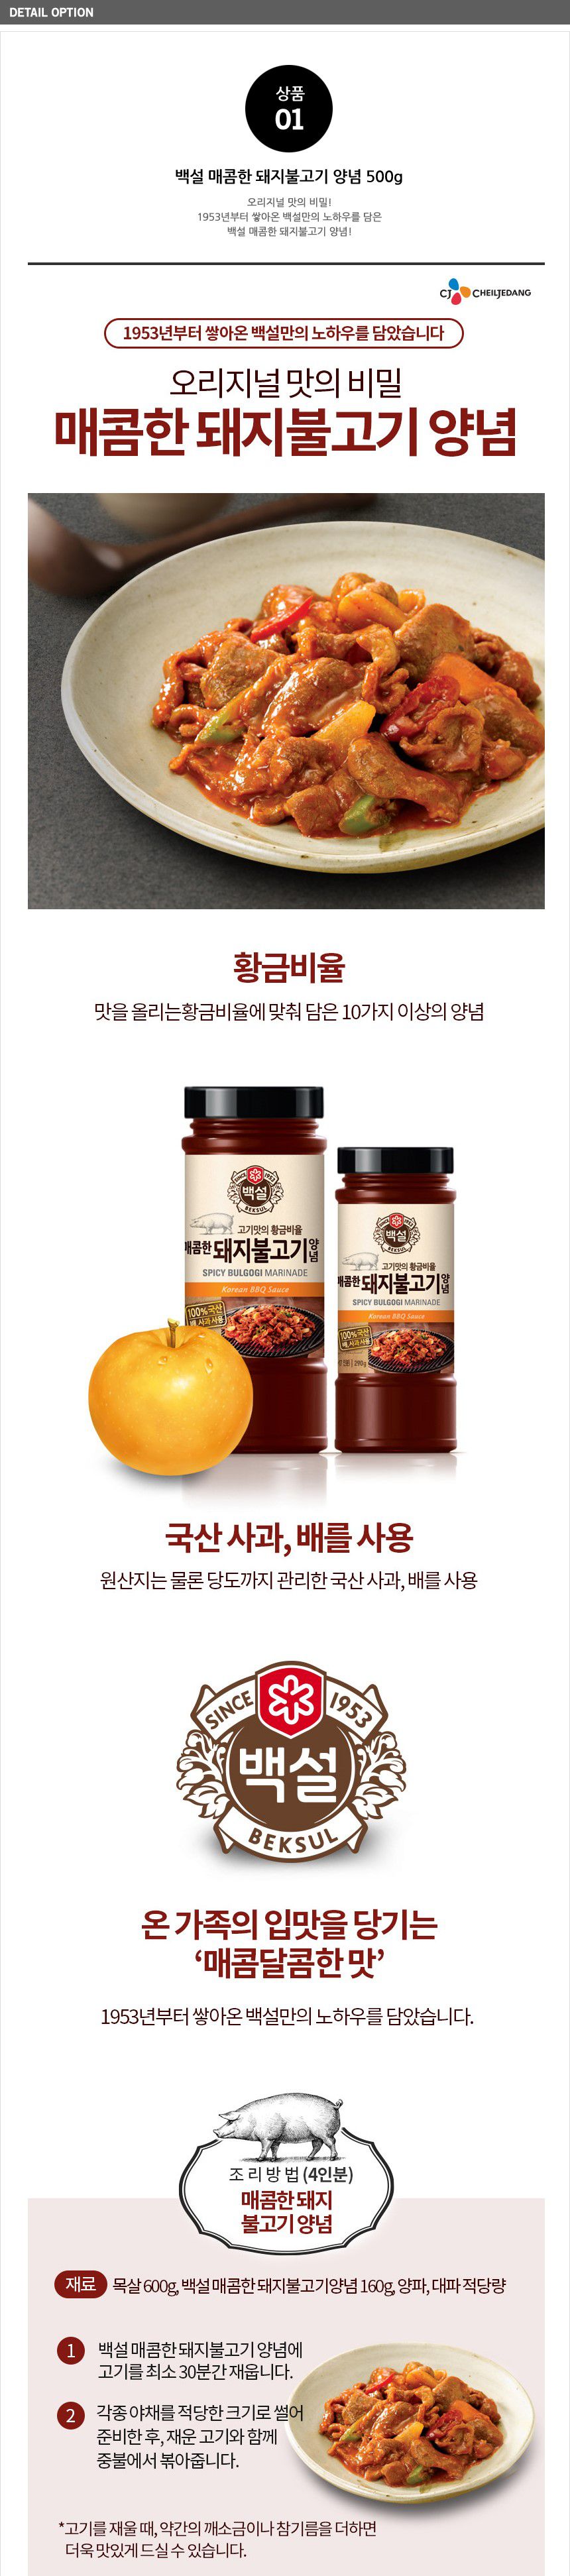 韓國食品-[CJ] Beksul Spicy Bulgogi Marinade 500g